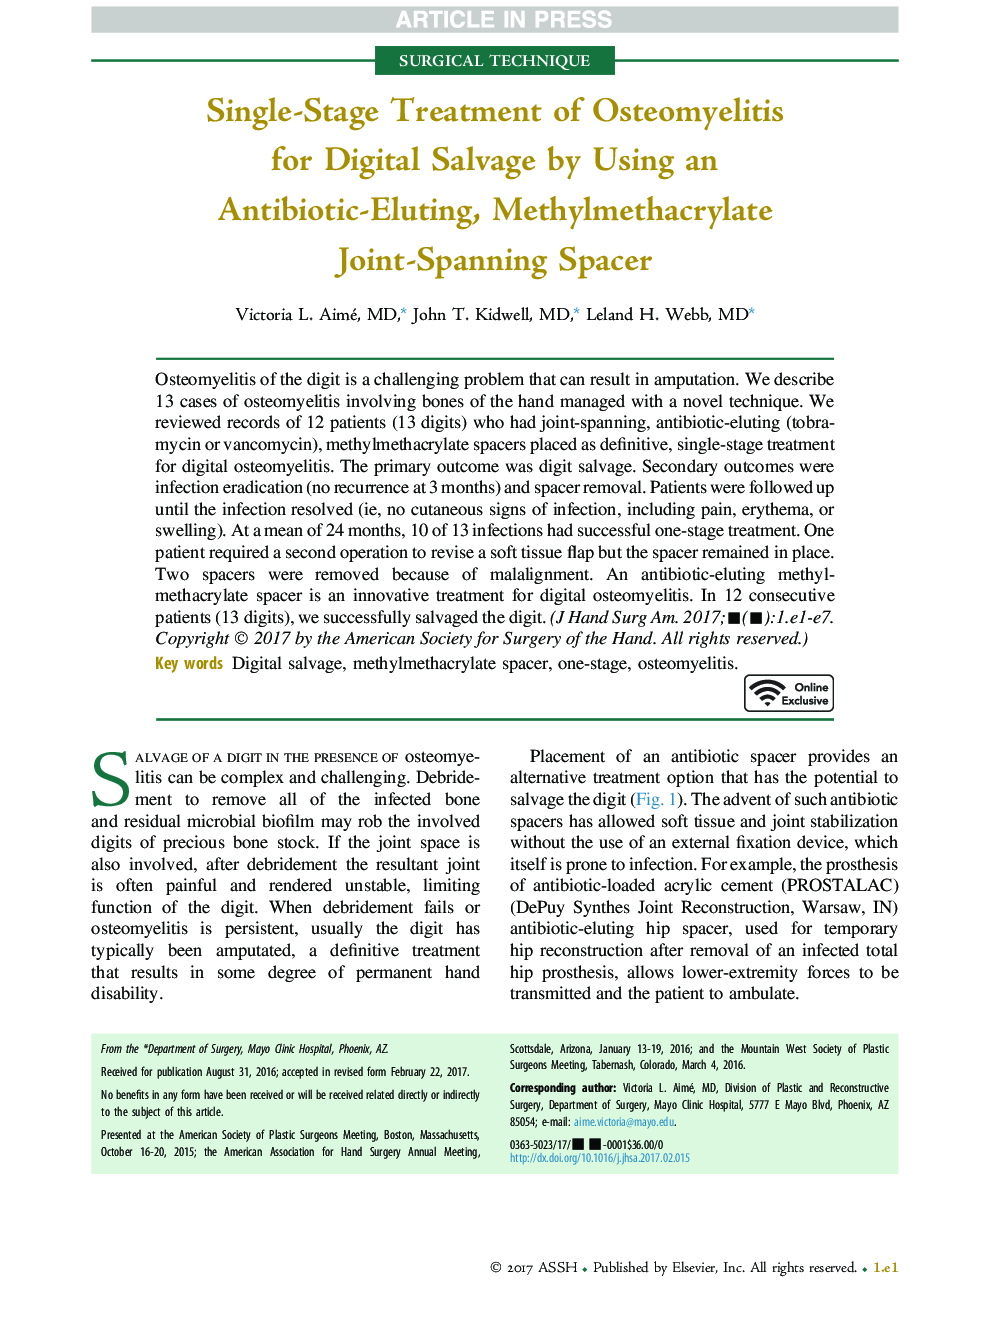 درمان تک مرحله ای استئومیلیت برای تخریب دیجیتالی با استفاده از یک آنتی بیوتیک زنده، متیل متاکریلات مشترک 